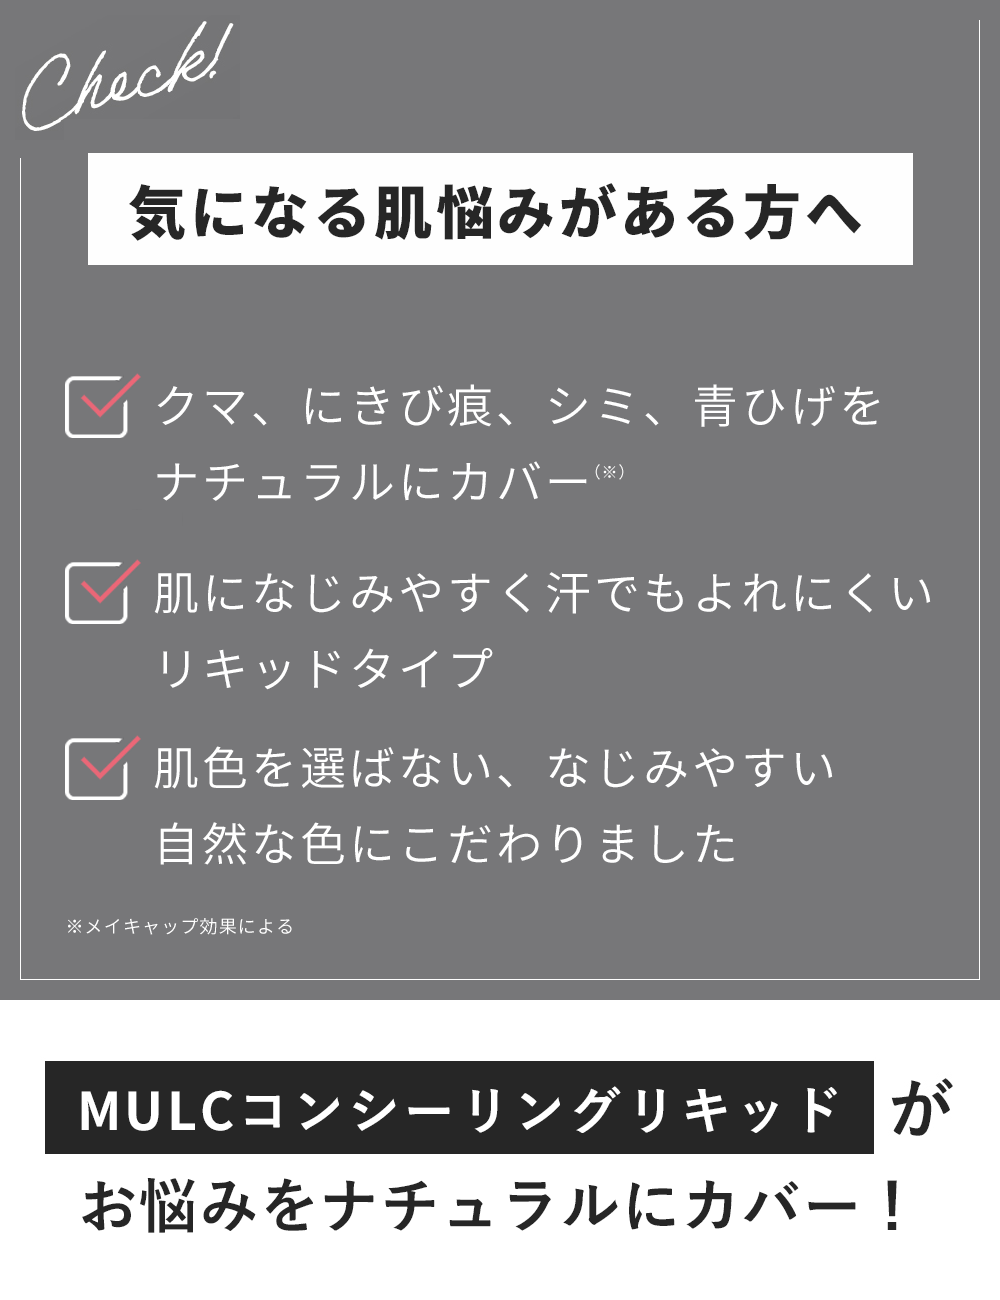 MULC コンシーリングリキッド - MULCオンラインショップ